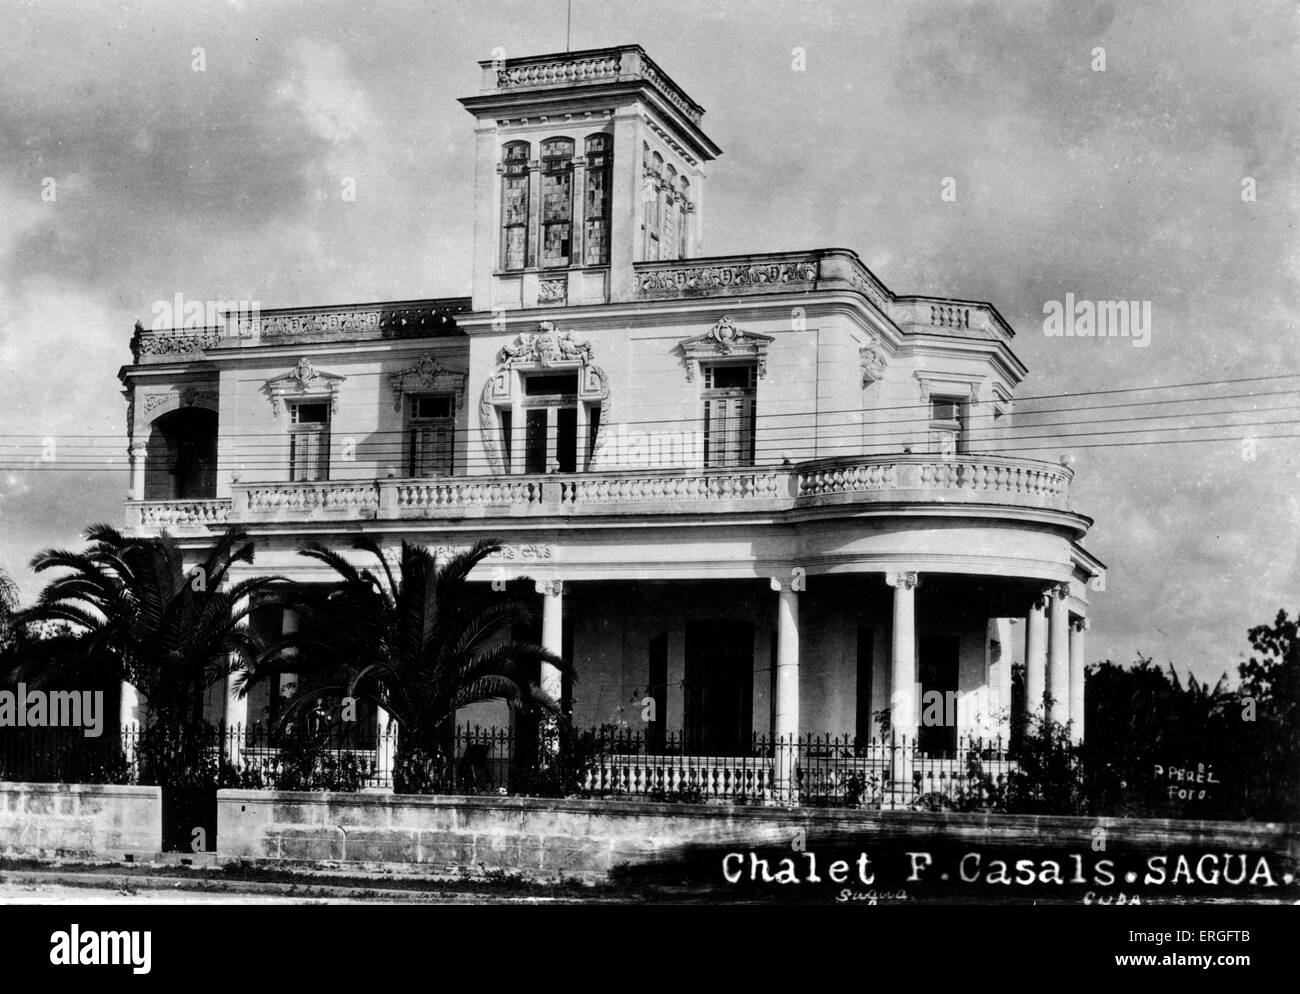 Chalet F. Casals, Sagua, Cuba. Xx secolo. Foto Stock